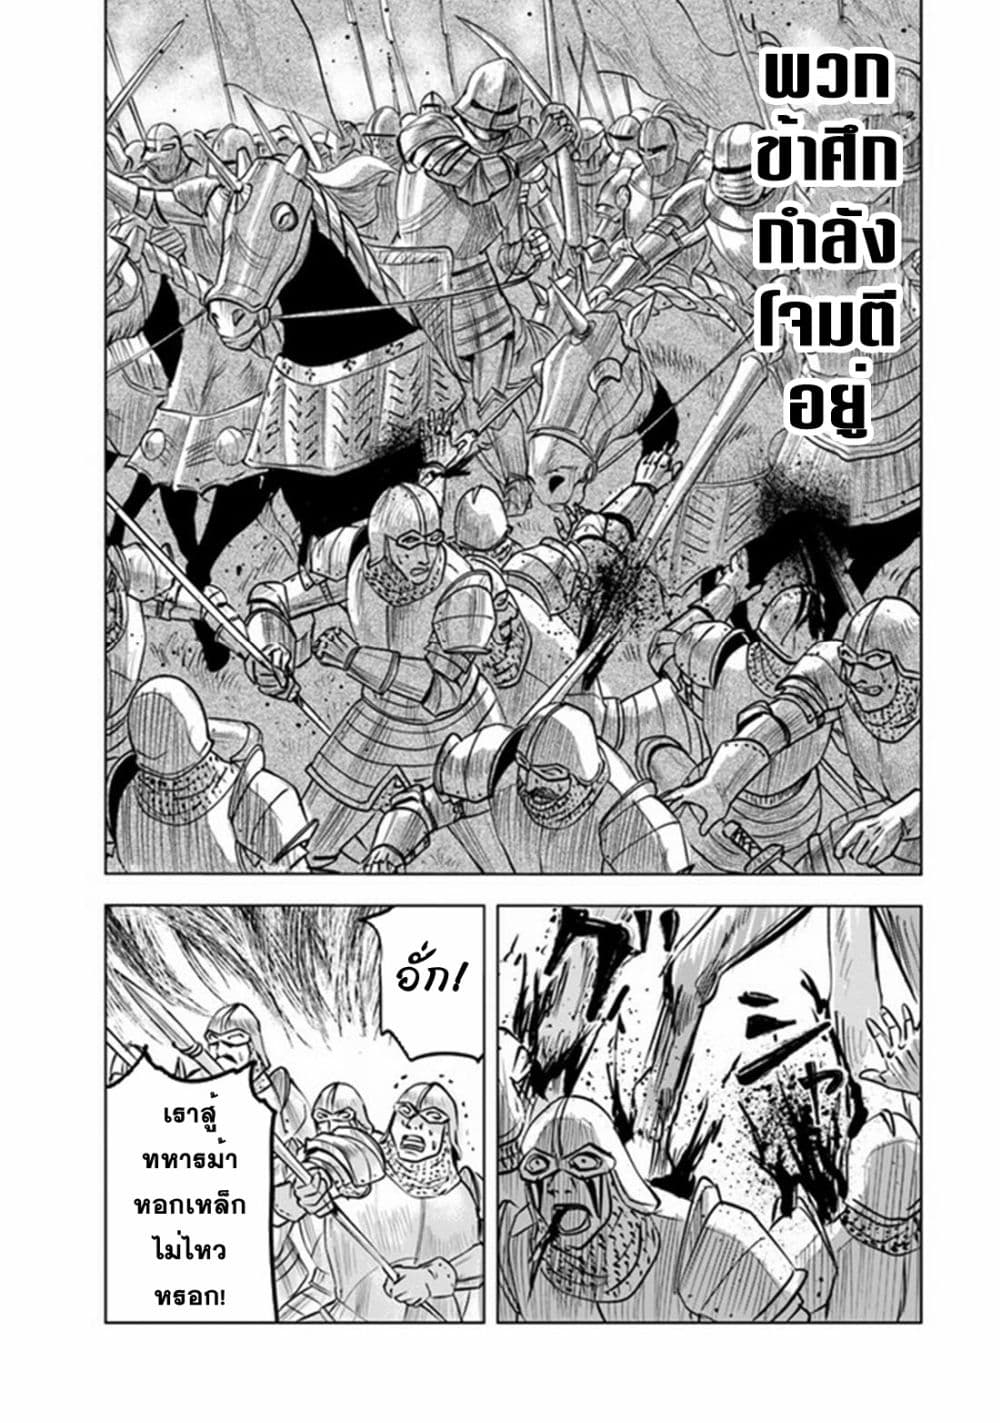 Oukoku e Tsuzuku Michi dorei Kenshi no Nariagari Eiyutan (Haaremu Raifu) - Road to the Kingdom Slave Swordsman the Rise of Heroes - Harem Life 50-50